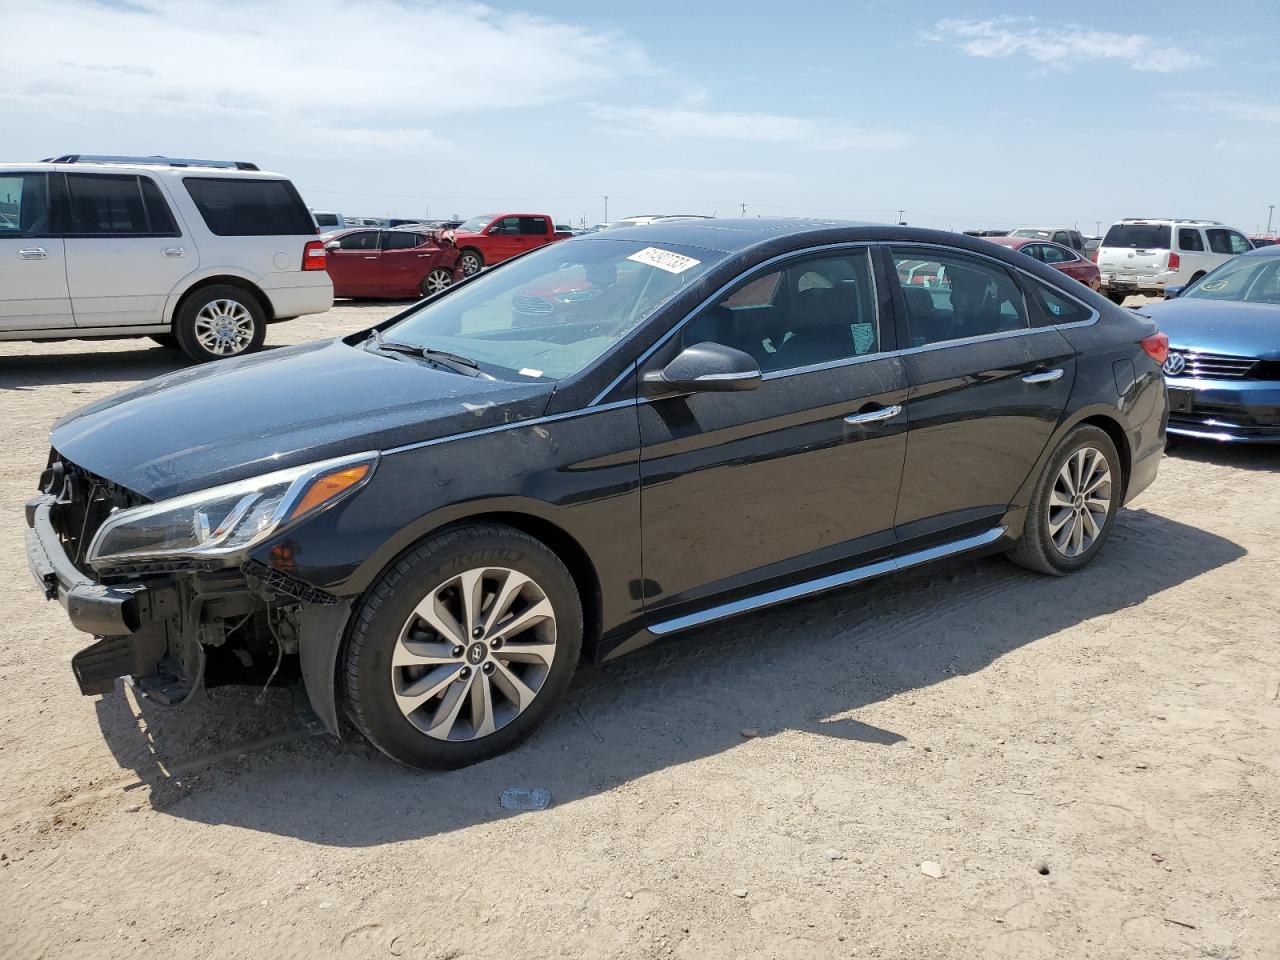 2017 Hyundai Sonata en TX - Amarillo, Copart lote 61492733